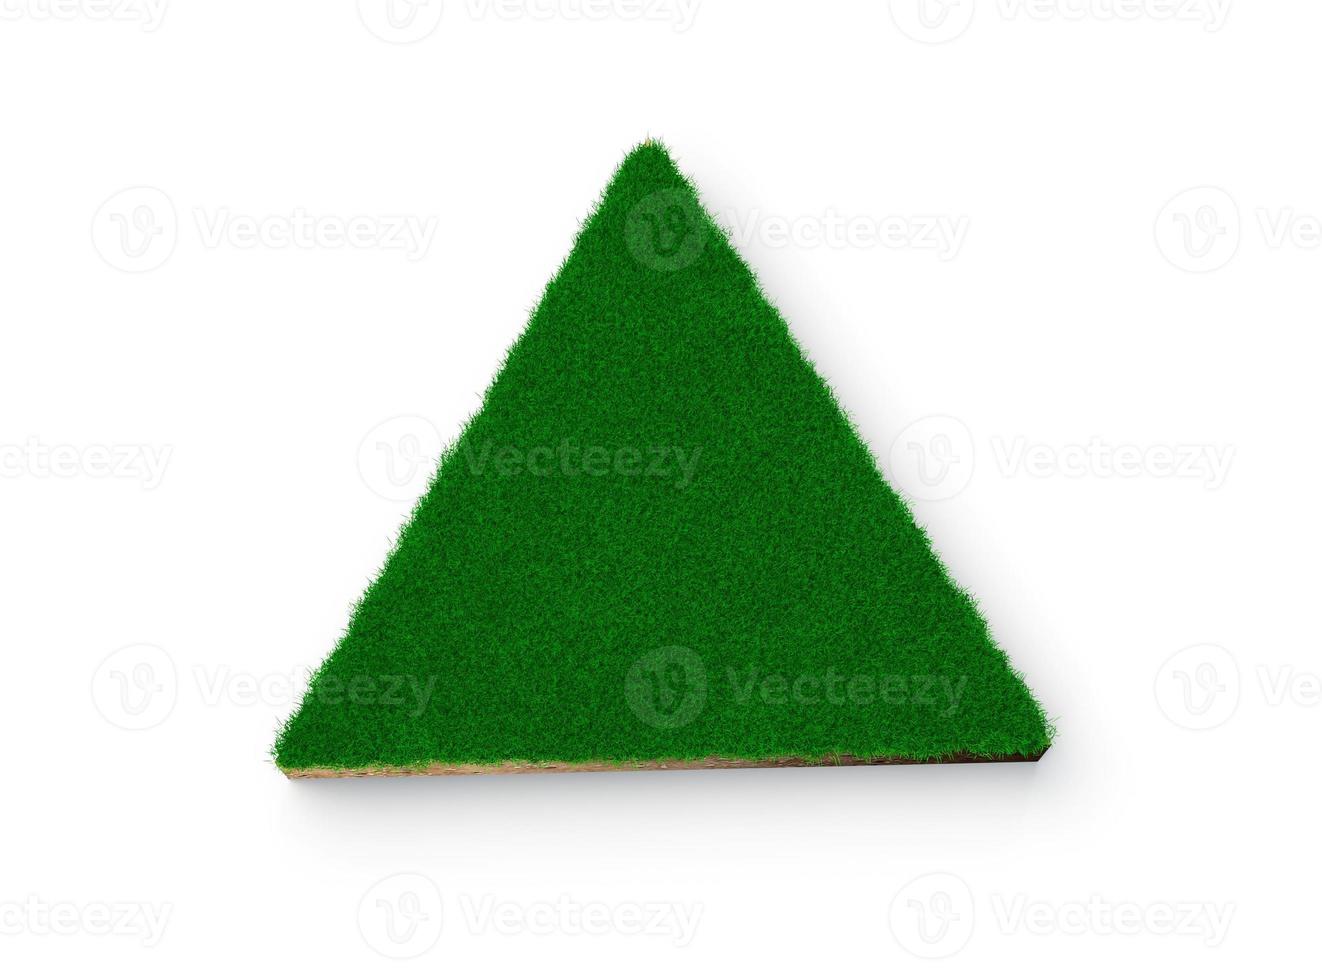 sección transversal de geología de la tierra del suelo en forma de triángulo con hierba verde, corte de lodo de la tierra ilustración 3d aislada foto